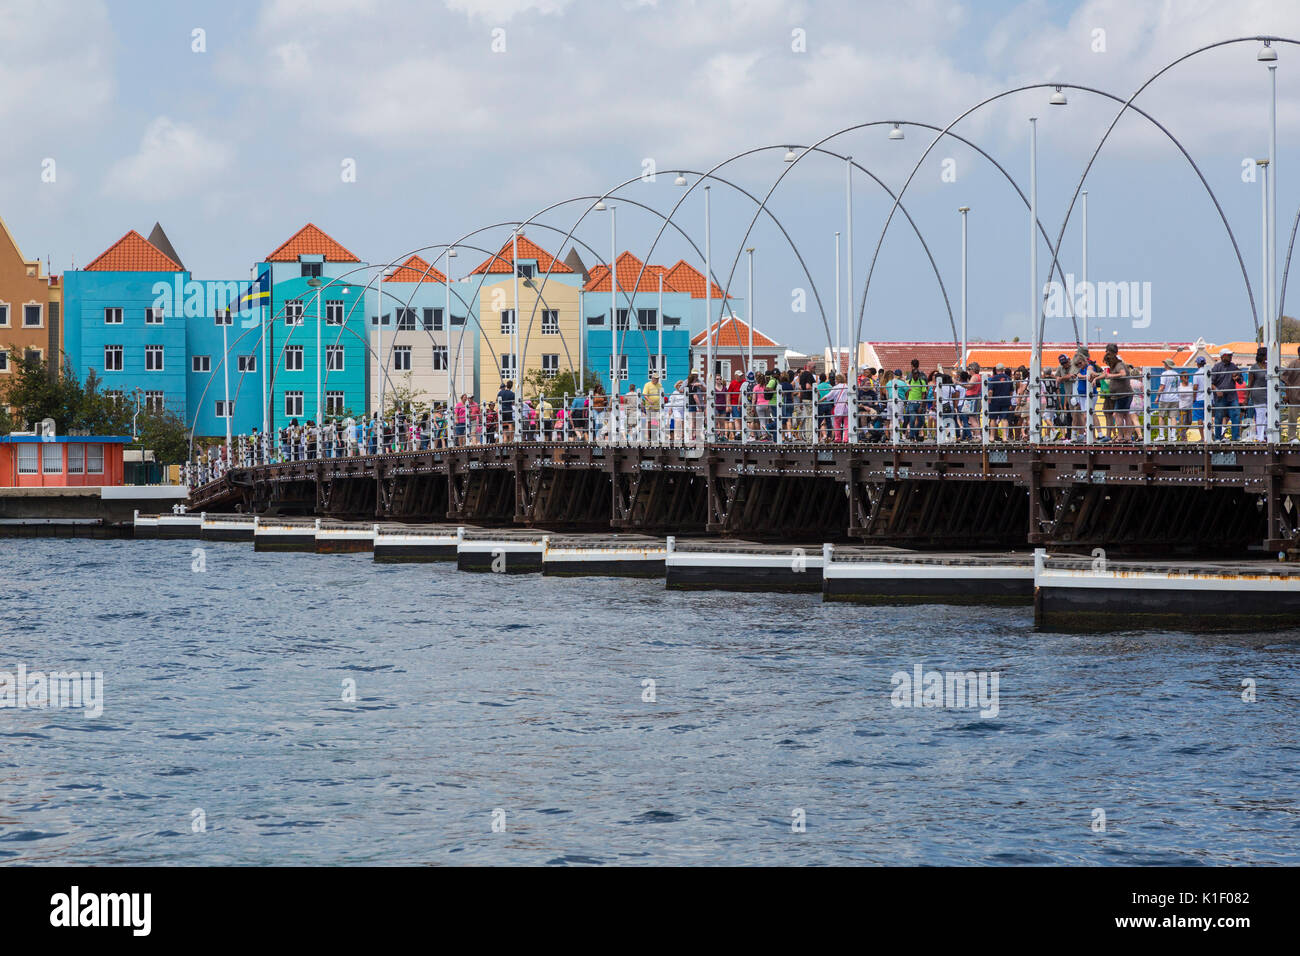 Willemstad, Curacao, Kleinen Antillen. Fußgänger Königin Emma Pontoon Bridge. Stockfoto